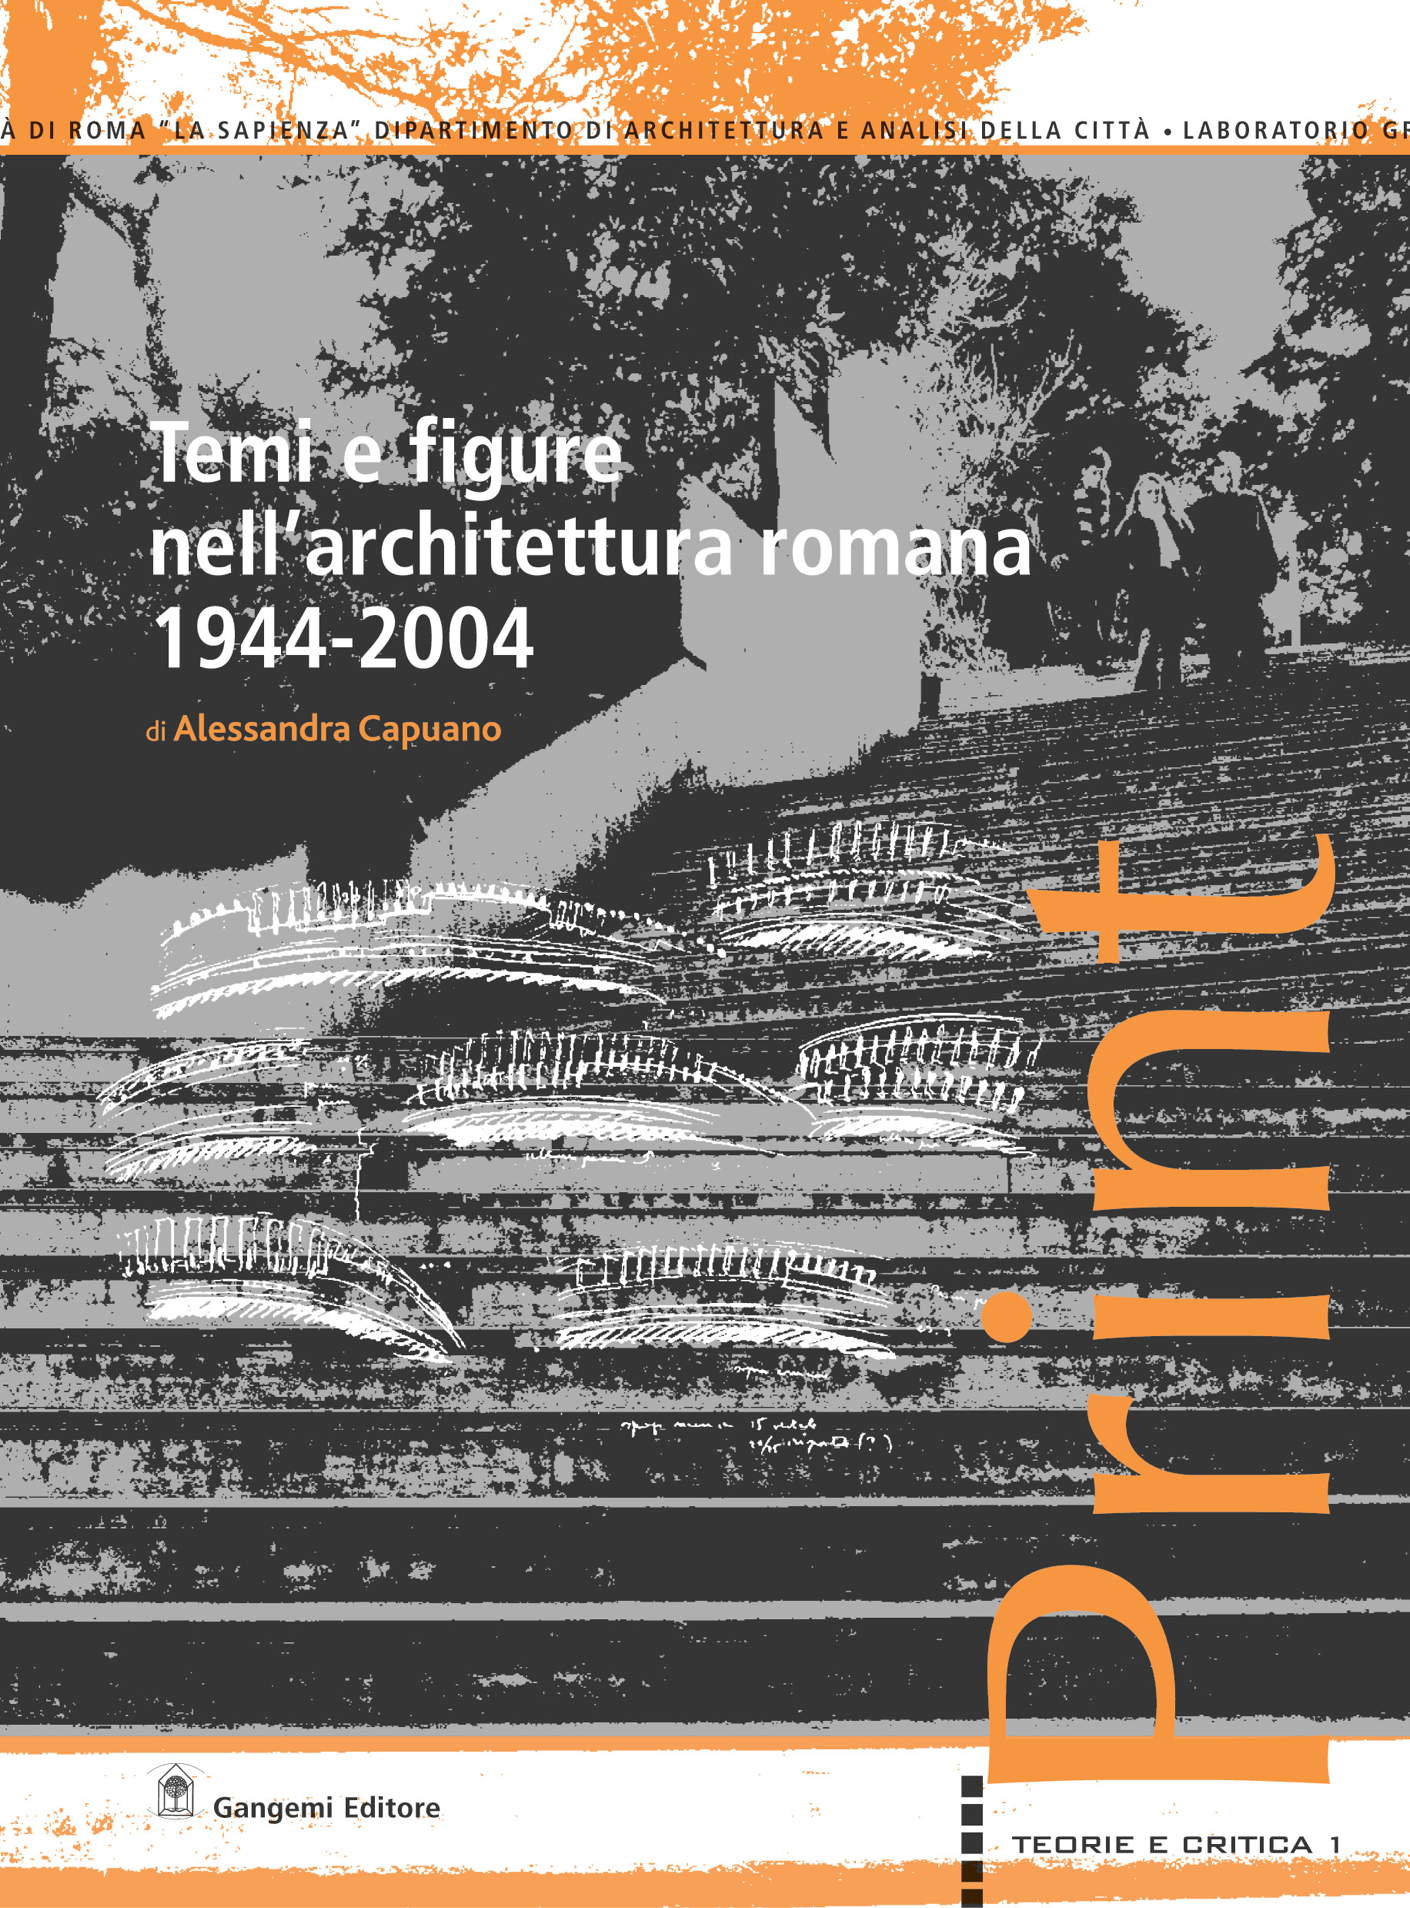 E-book, Temi e figure nell'architettura romana, 1944-2004, Gangemi